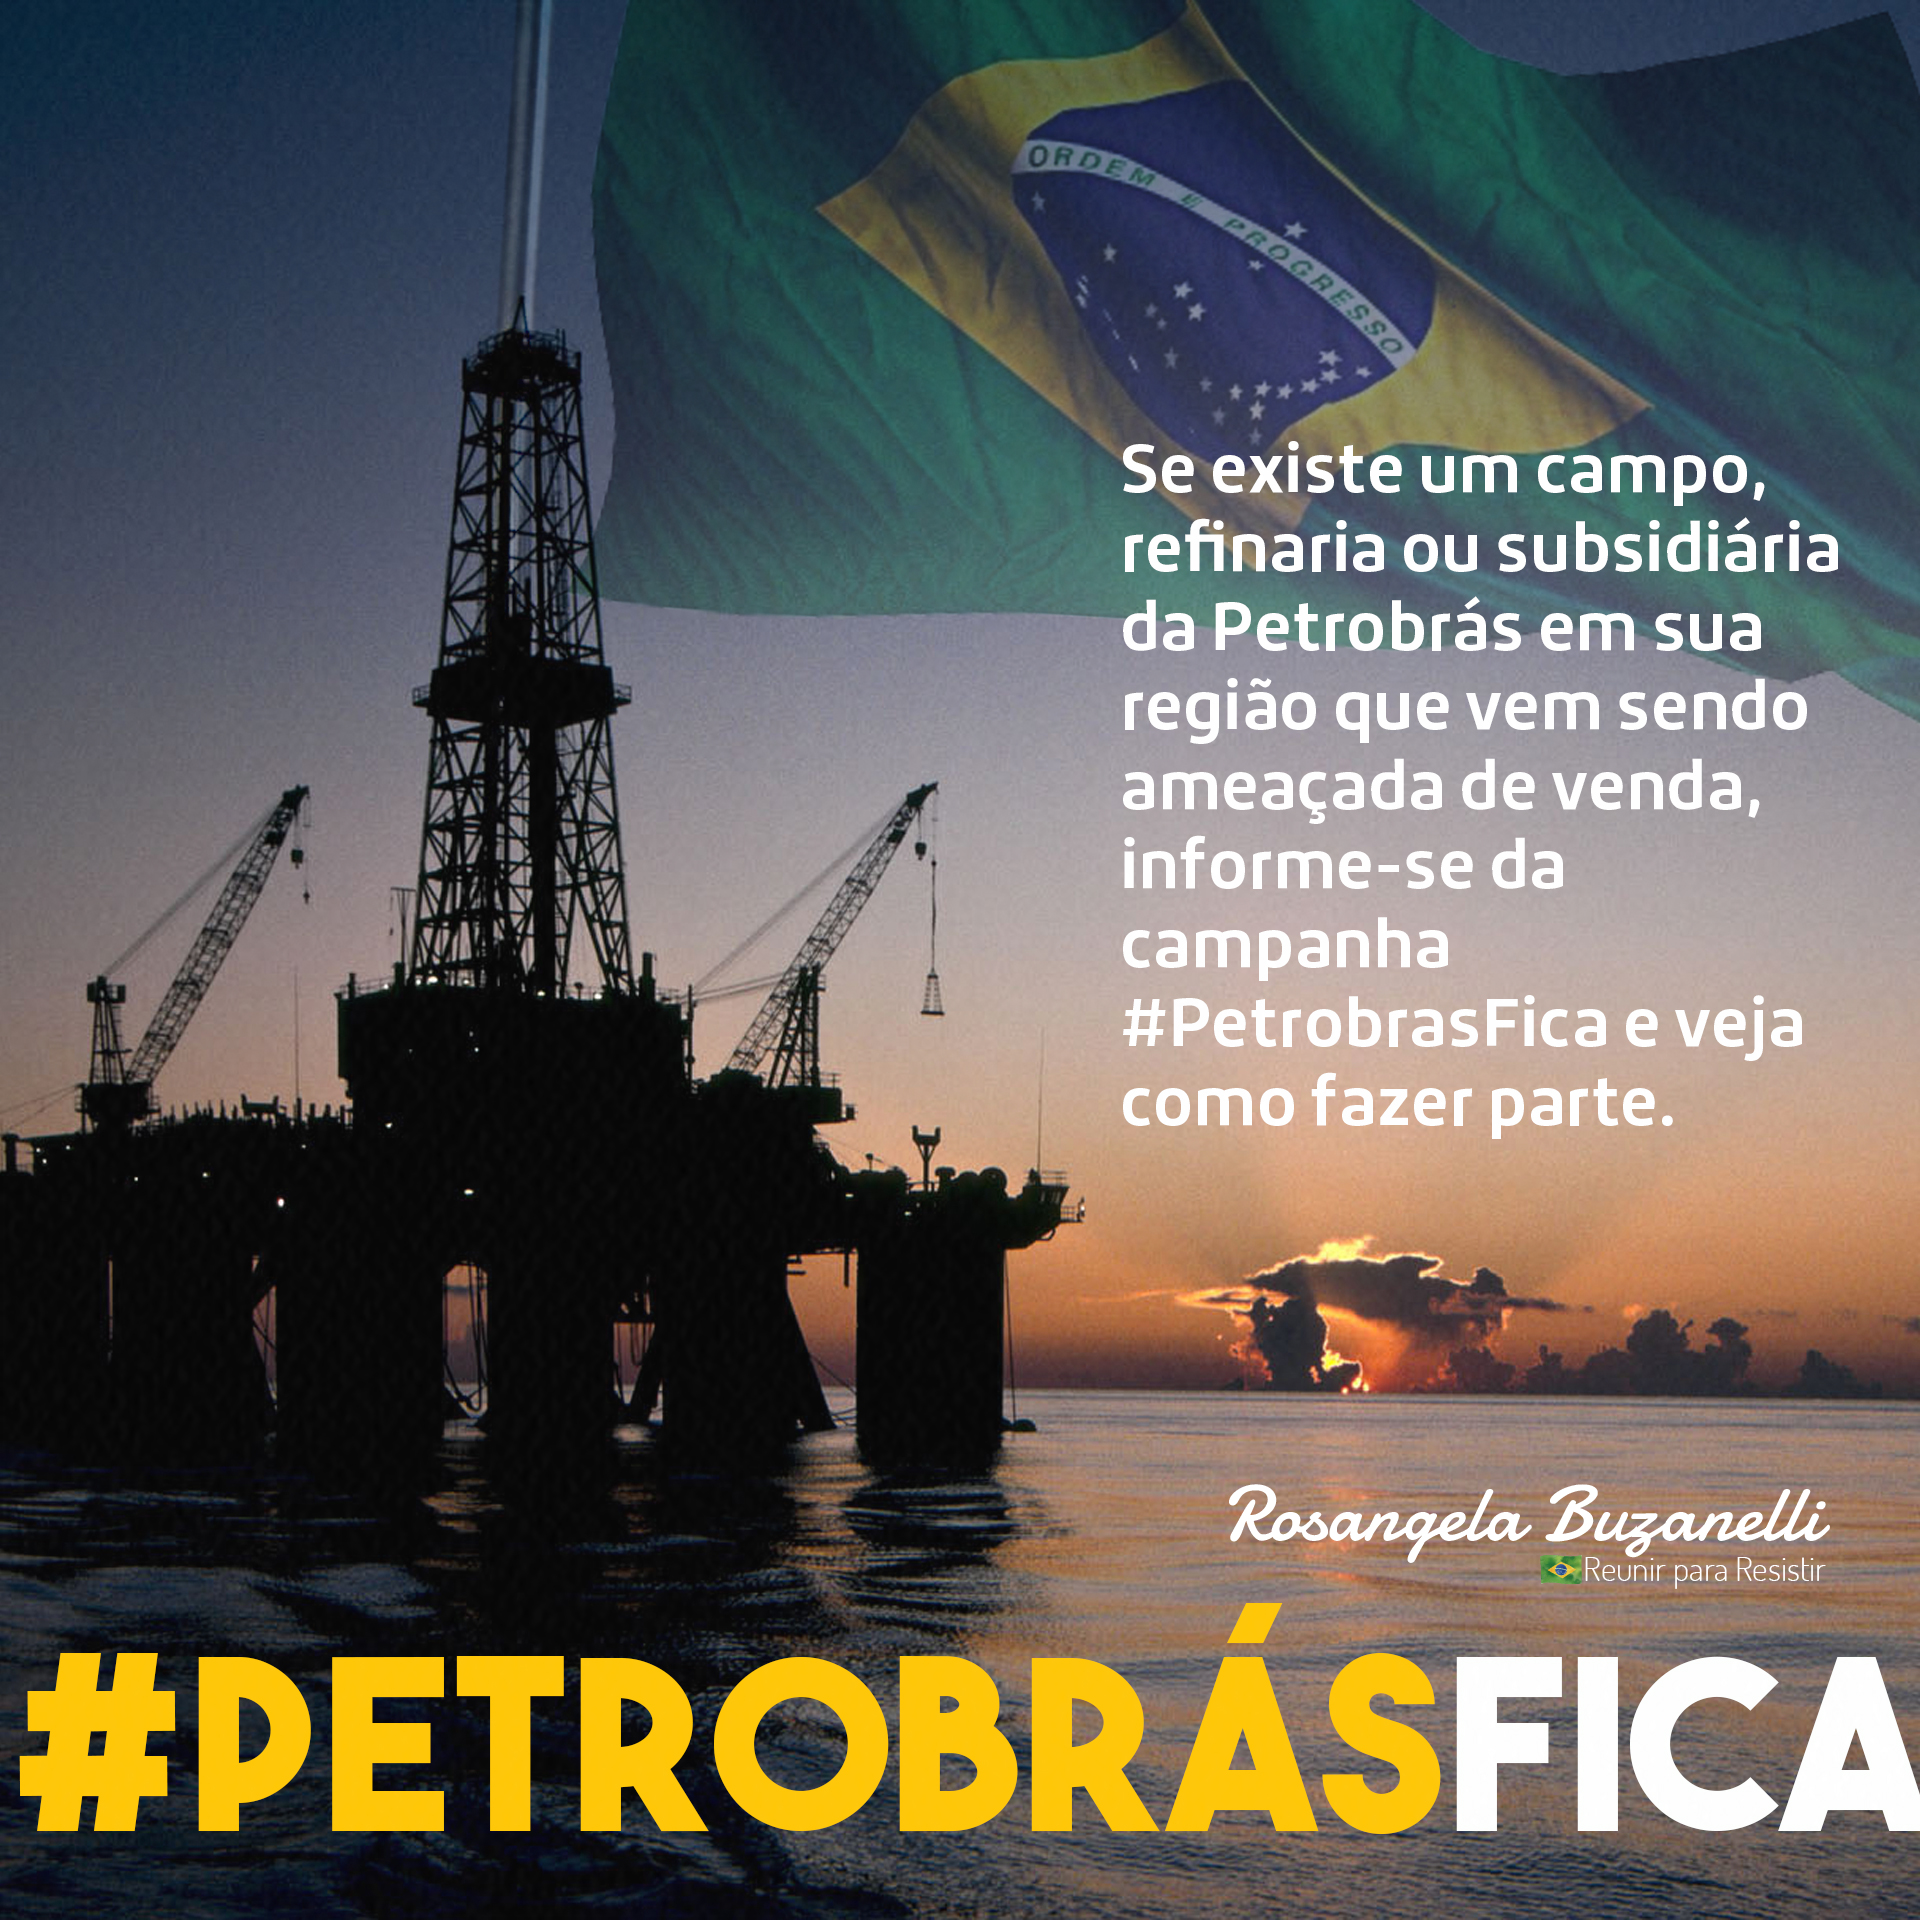 Você conhece o movimento #PetrobrasFica?